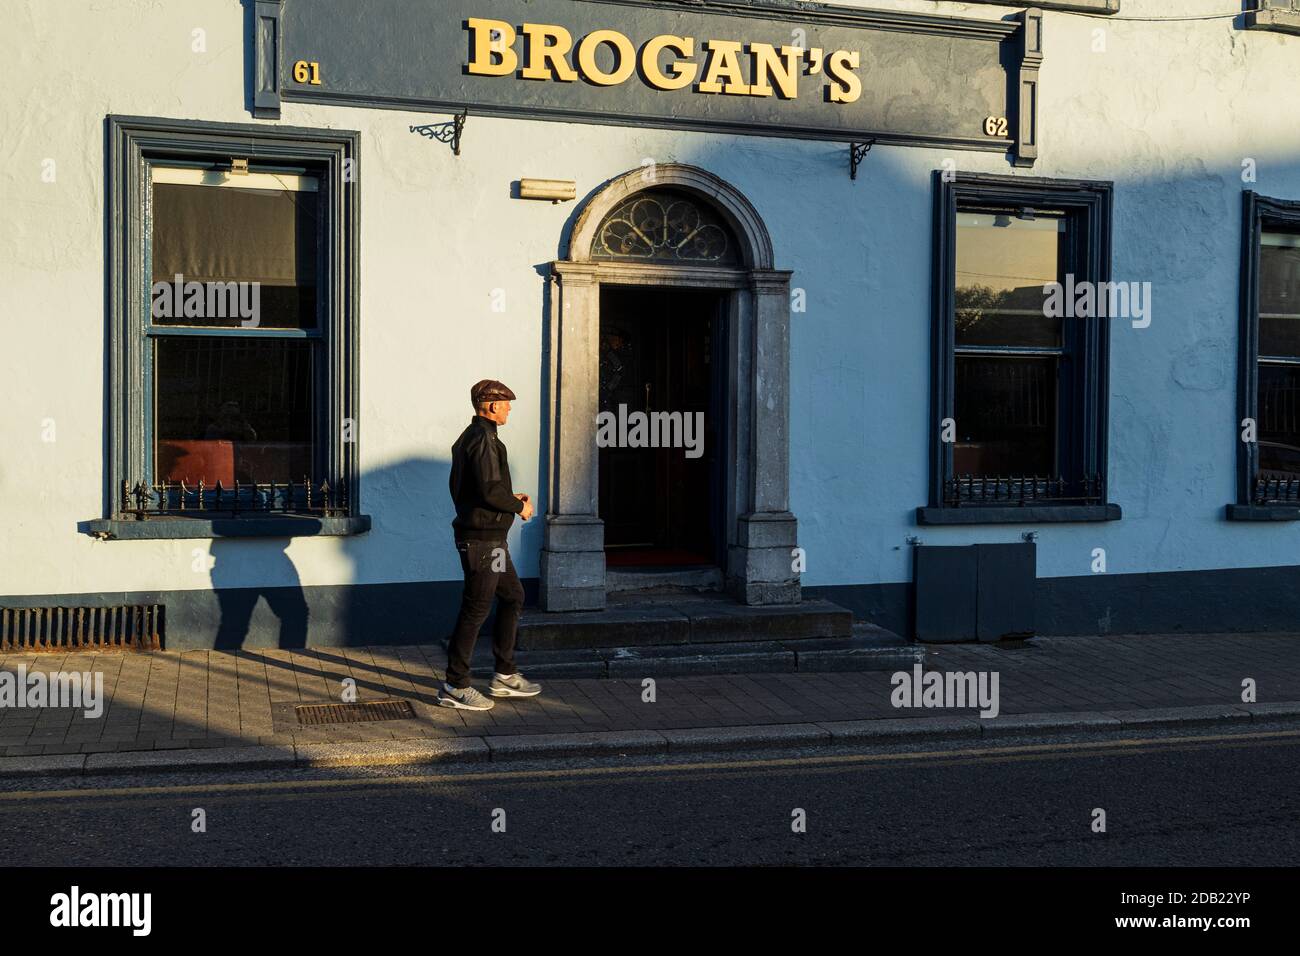 Man in flat cap, on John street outside Brogans public house in Kilkenny, County Kilkenny, Ireland Stock Photo